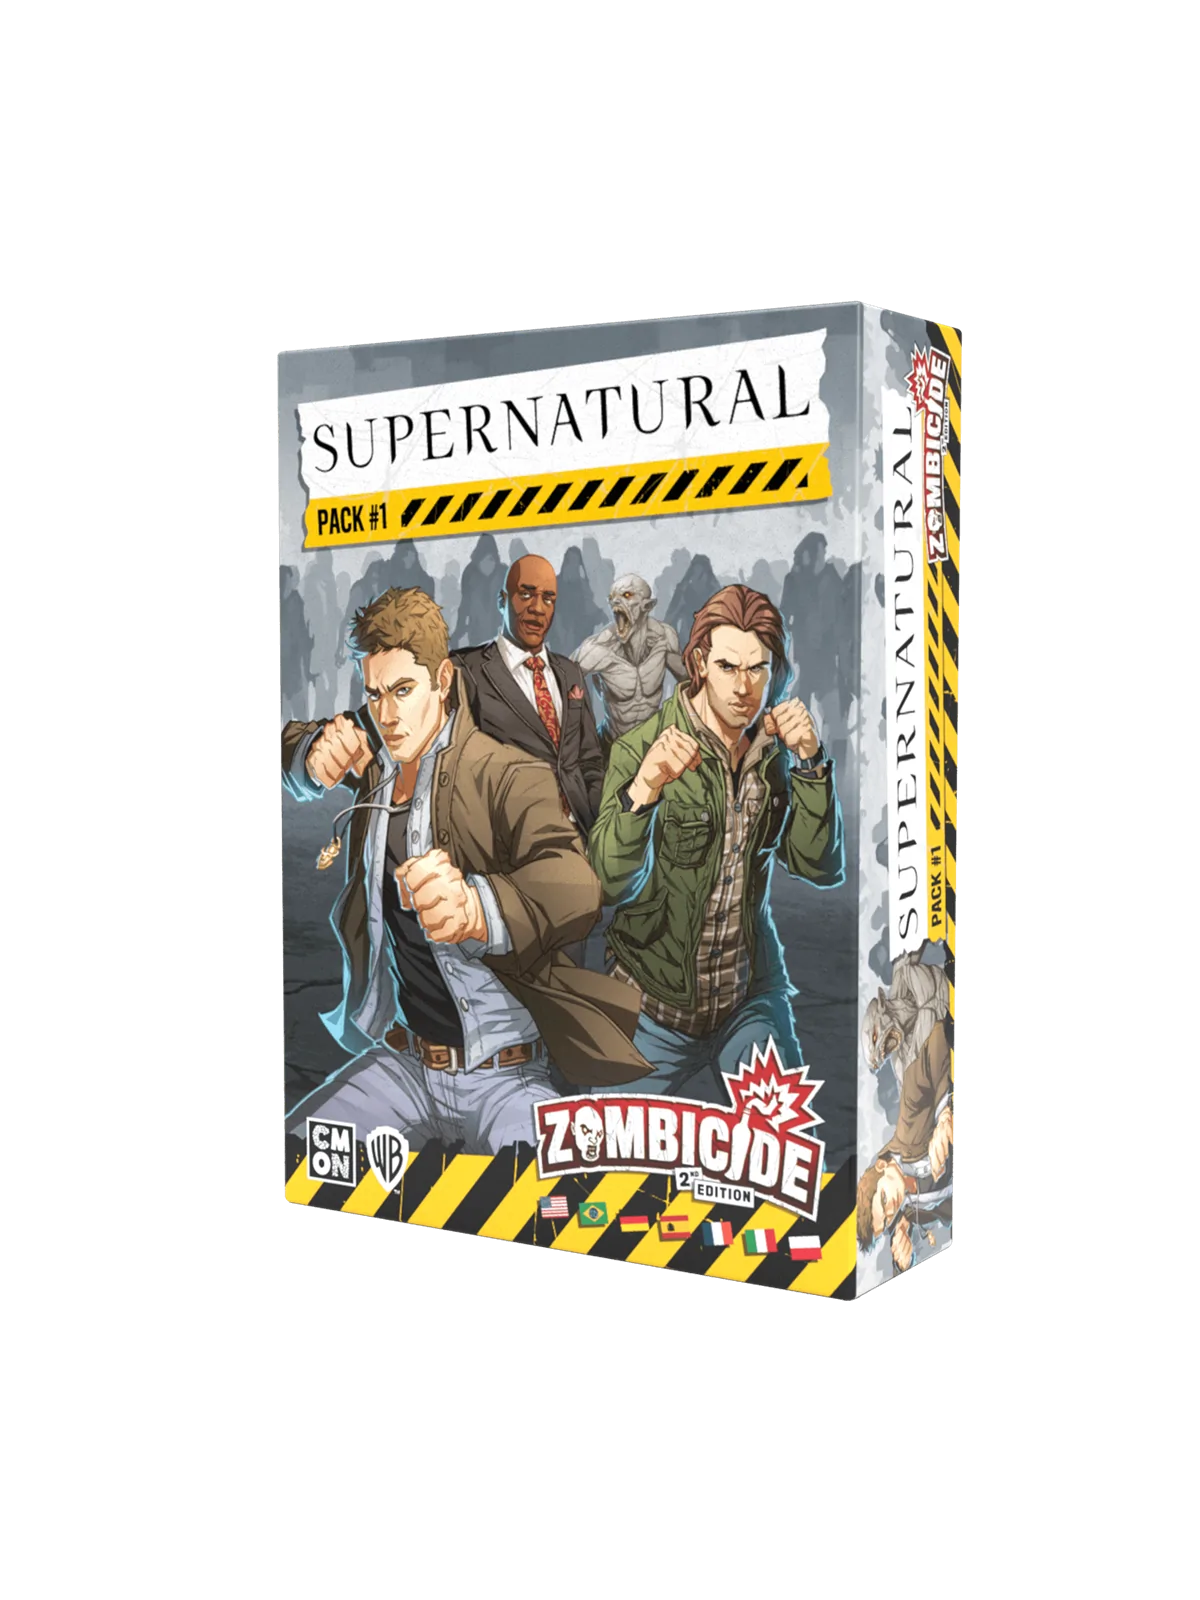 Comprar Supernatural Character Pack 1 barato al mejor precio 22,49 € d